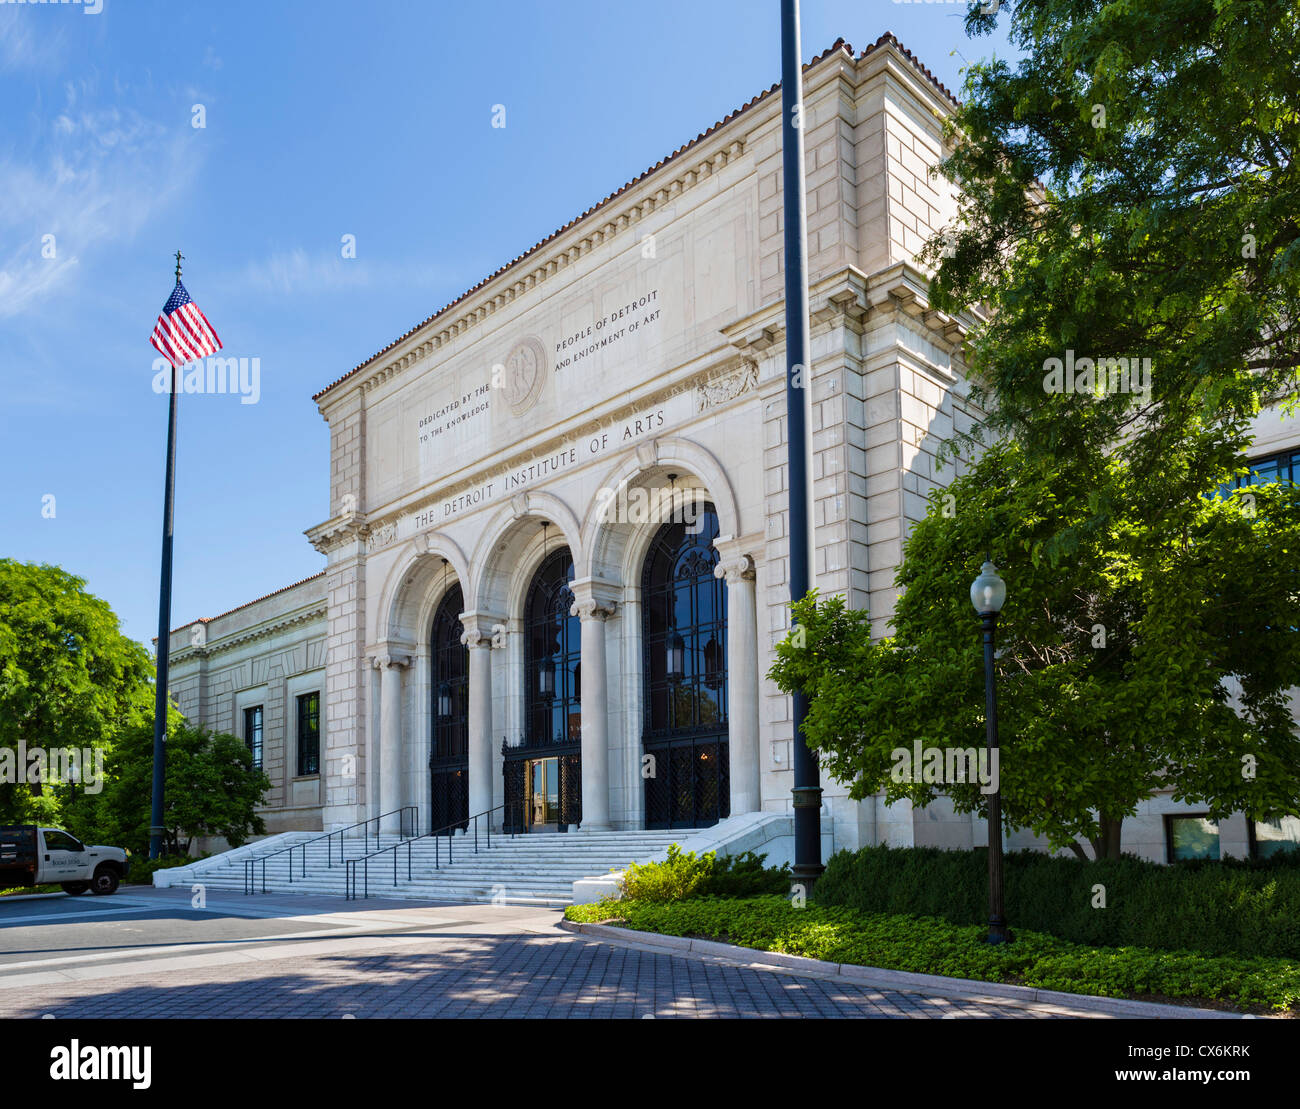 Das Detroit Institute of Arts am Kulturzentrum Woodward Avenue, Detroit, Detroit, Michigan, USA Stockfoto